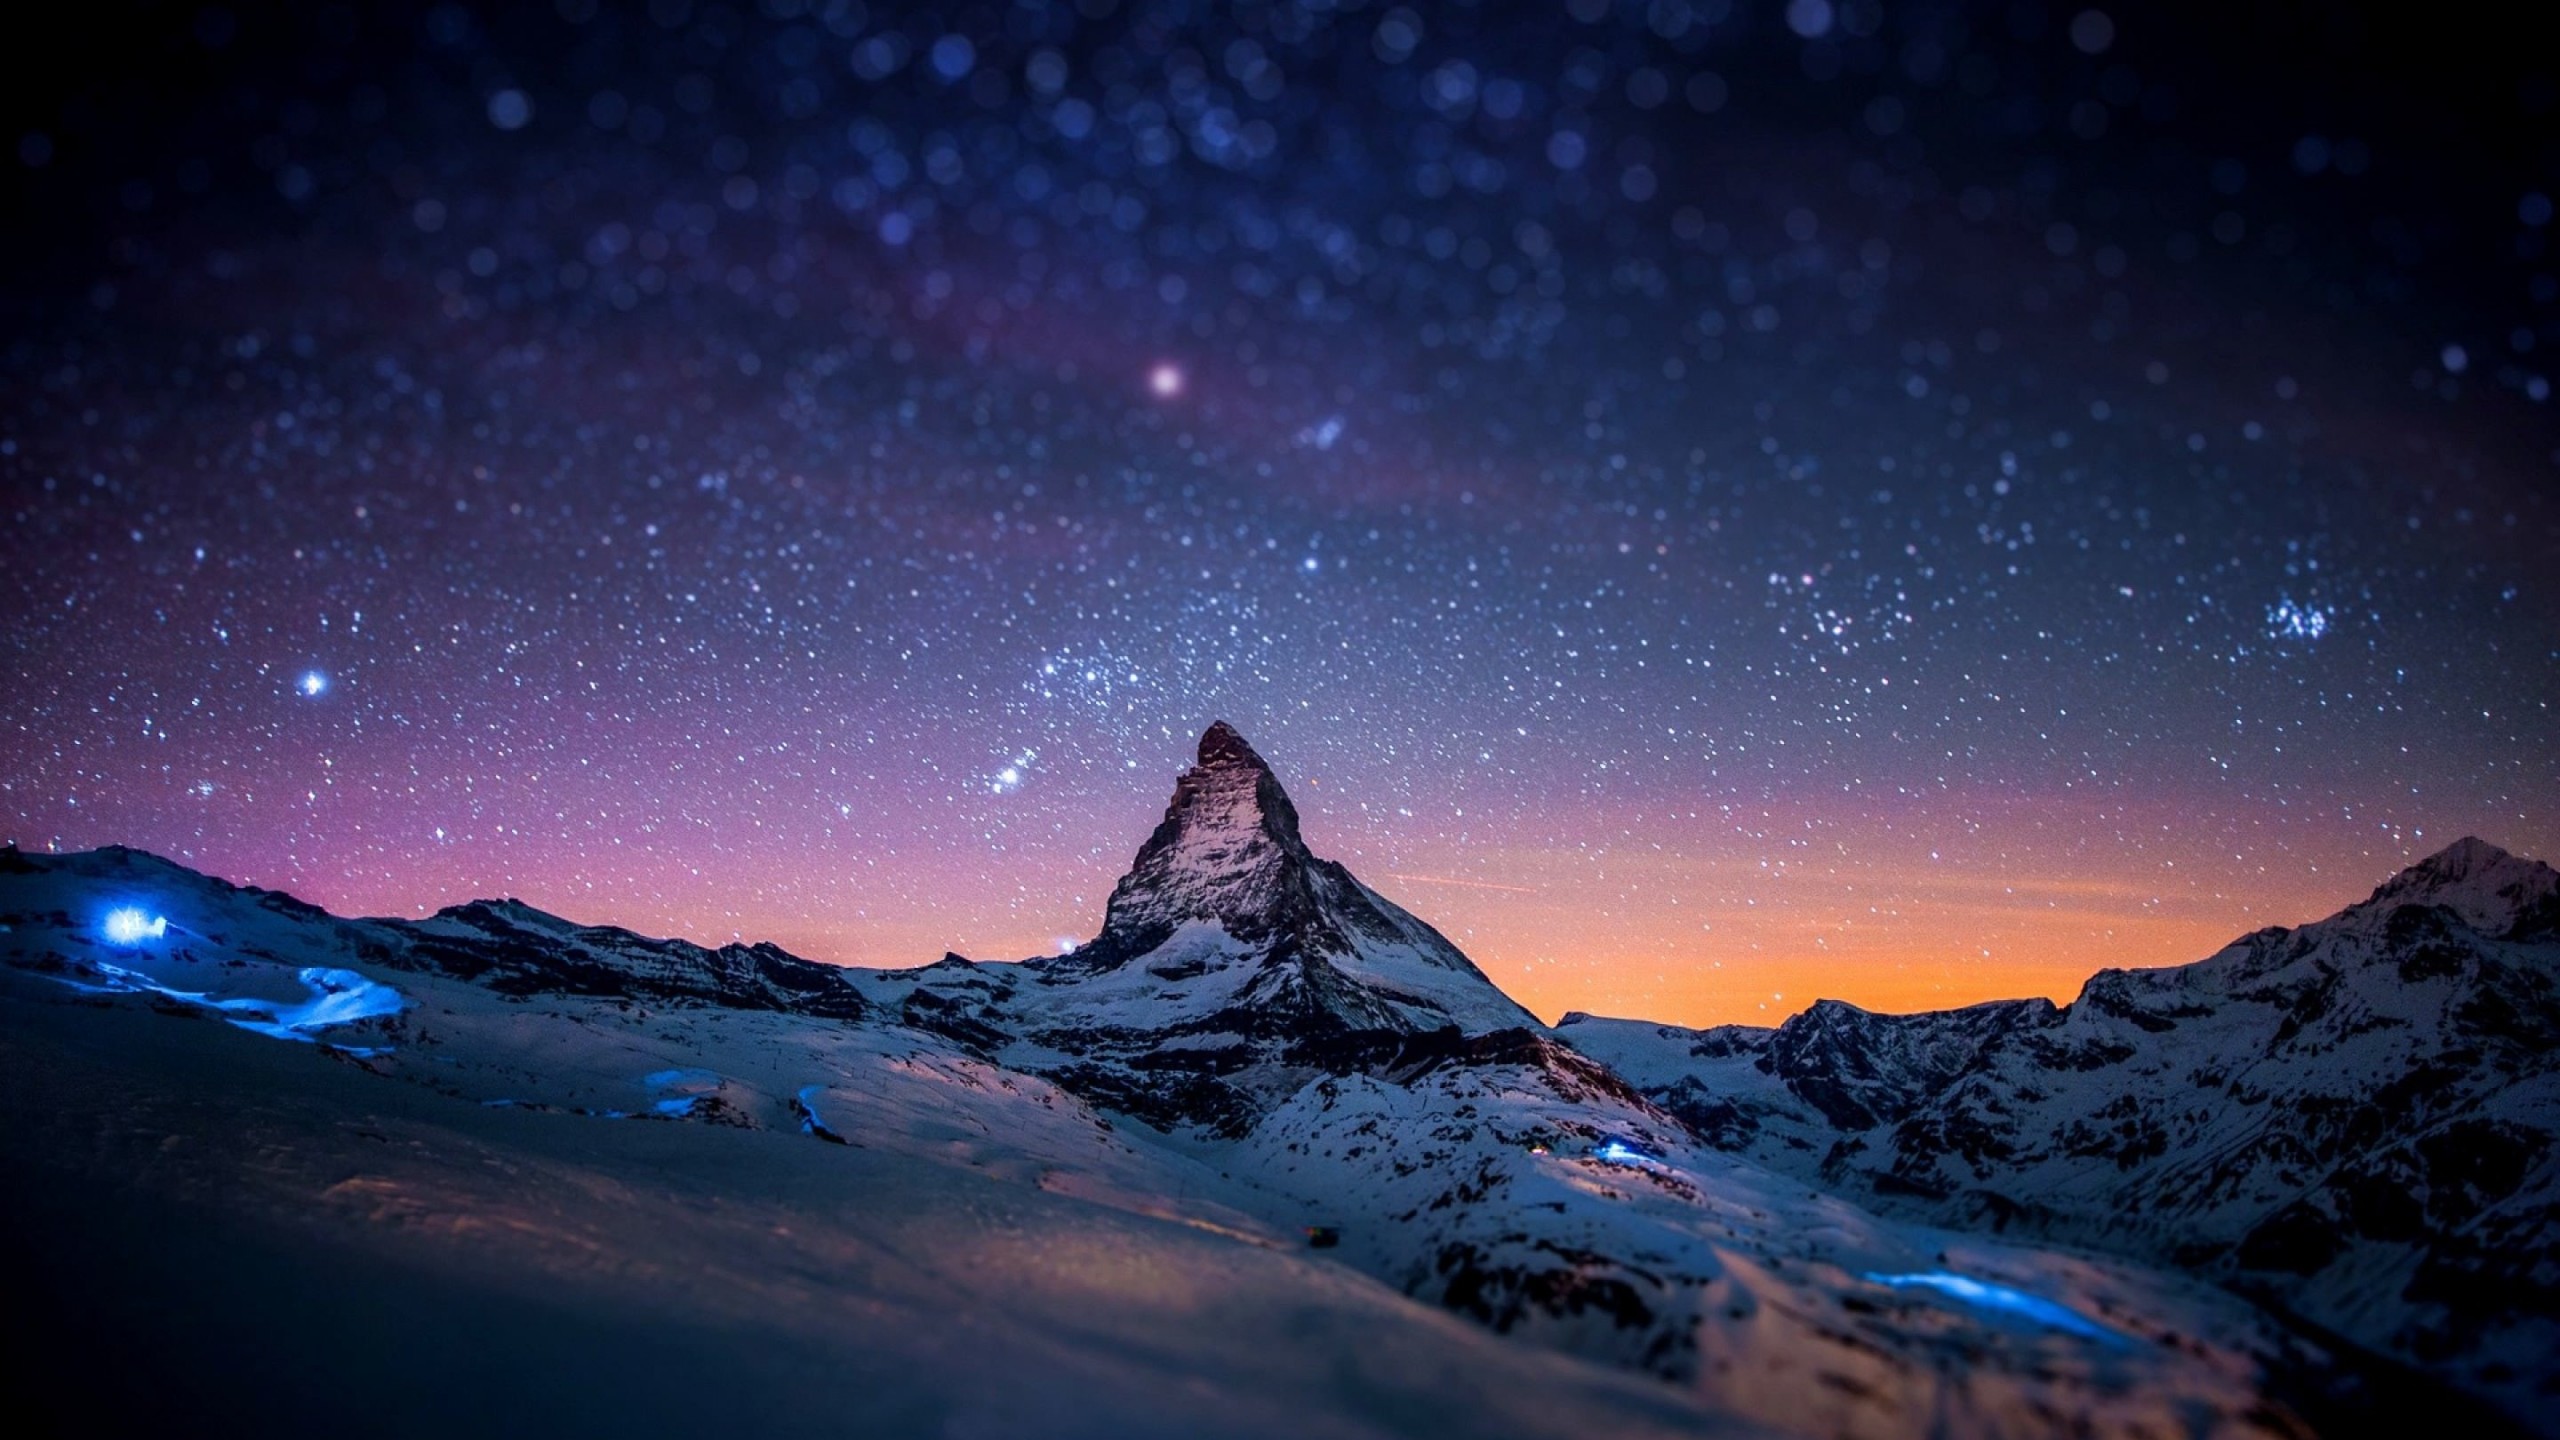 Starry Night Over The Matterhorn Wallpaper for Social Media YouTube Channel Art